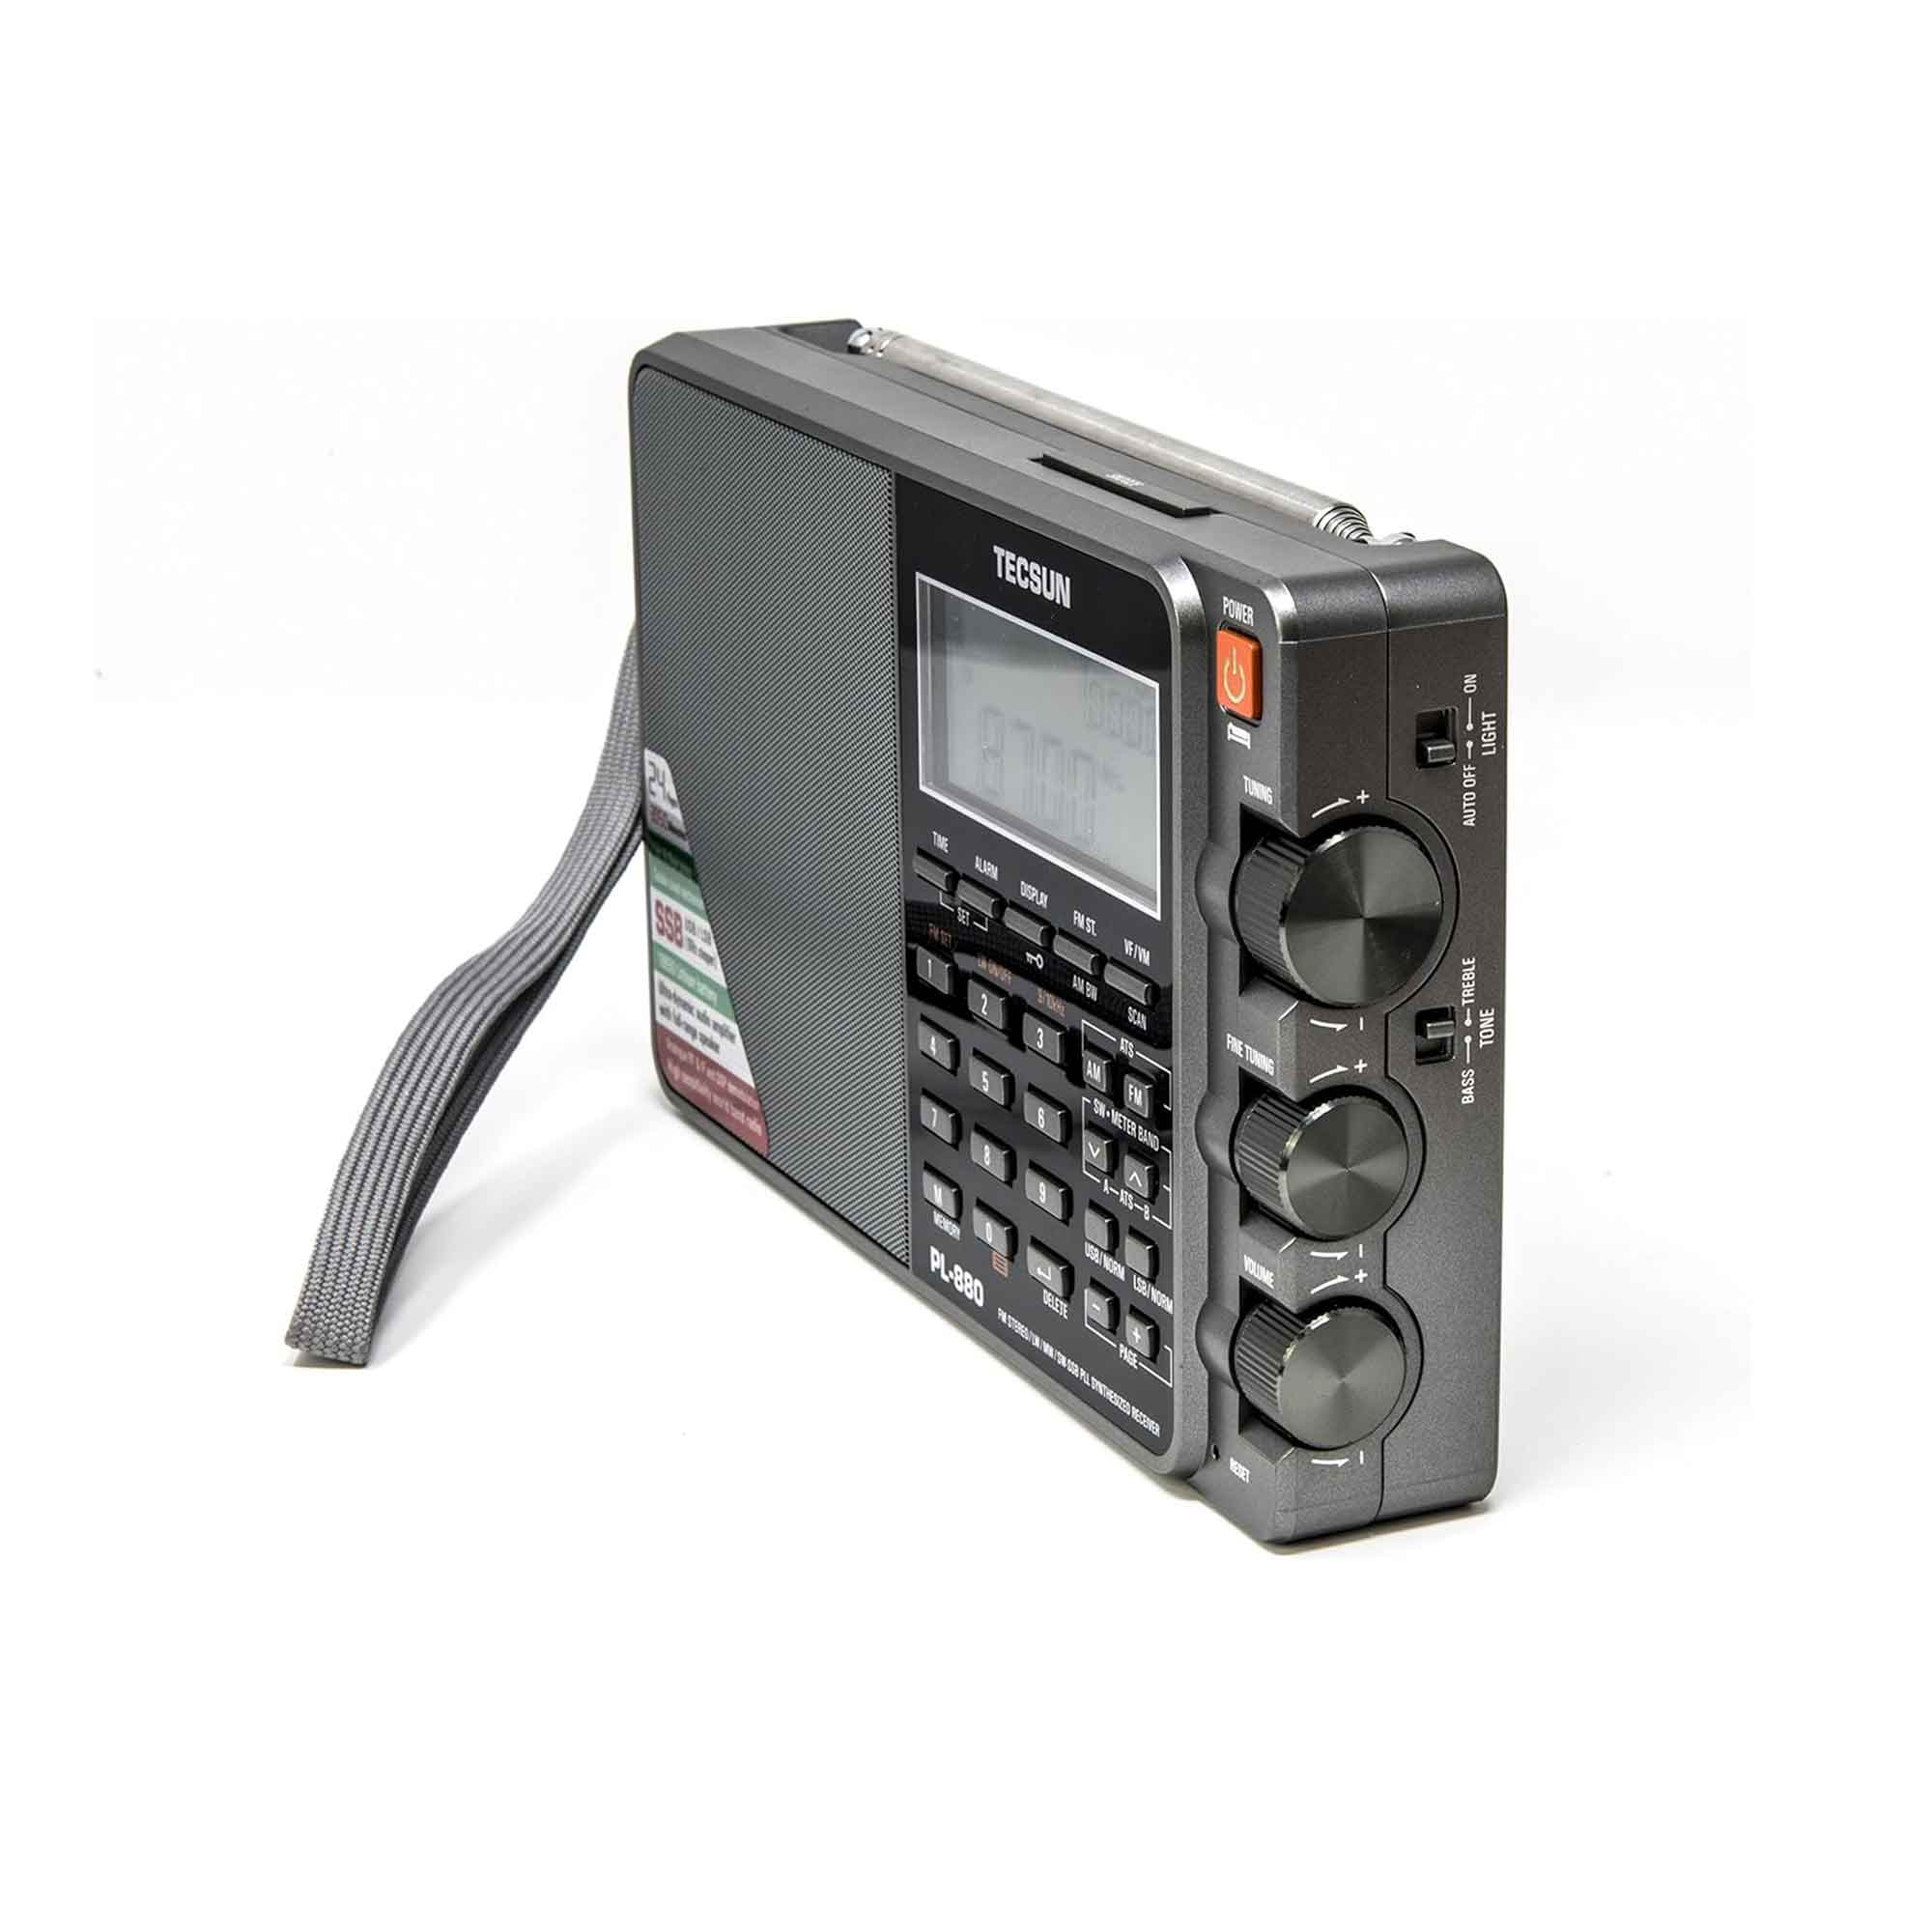 Tecsun PL880 PLL Dual Conversion AM FM Shortwave Portable Radio 